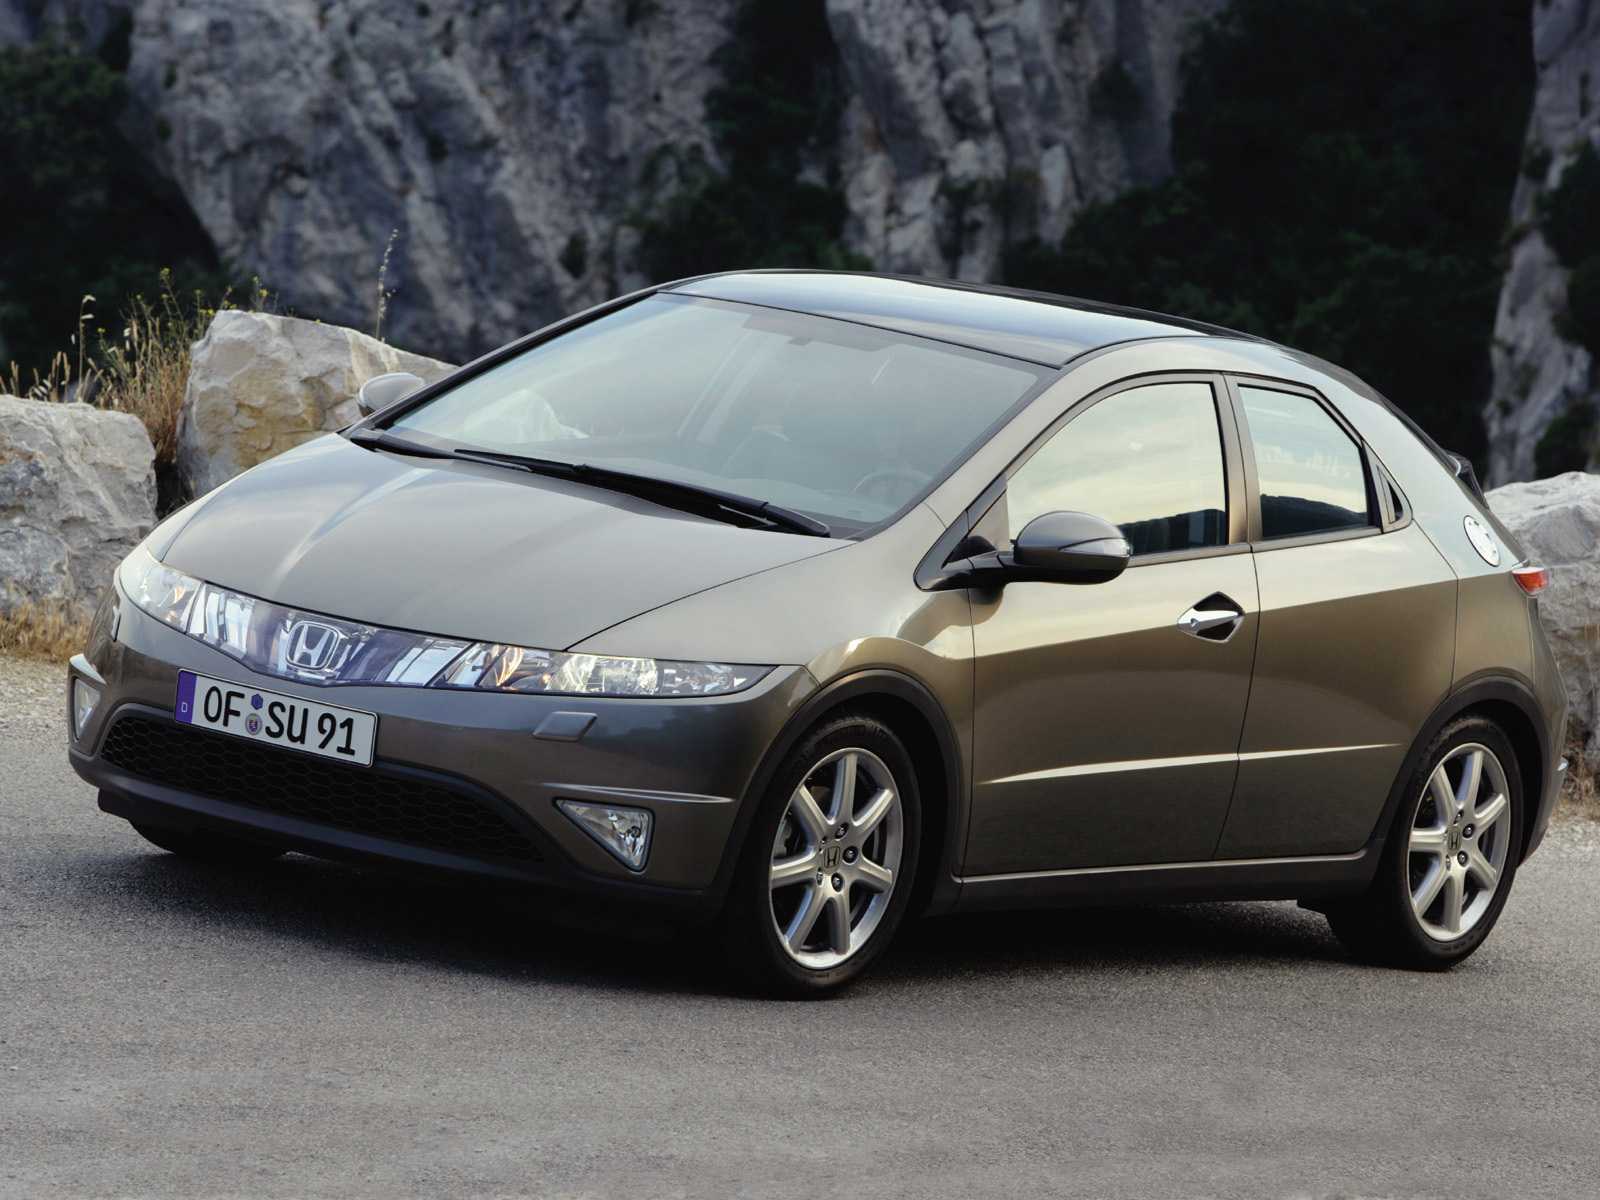 Хонда цивик 2007 года, 1.8л., всем привет, бензин, цвет серый, левый руль, автомат, двигатель 140 л.с.